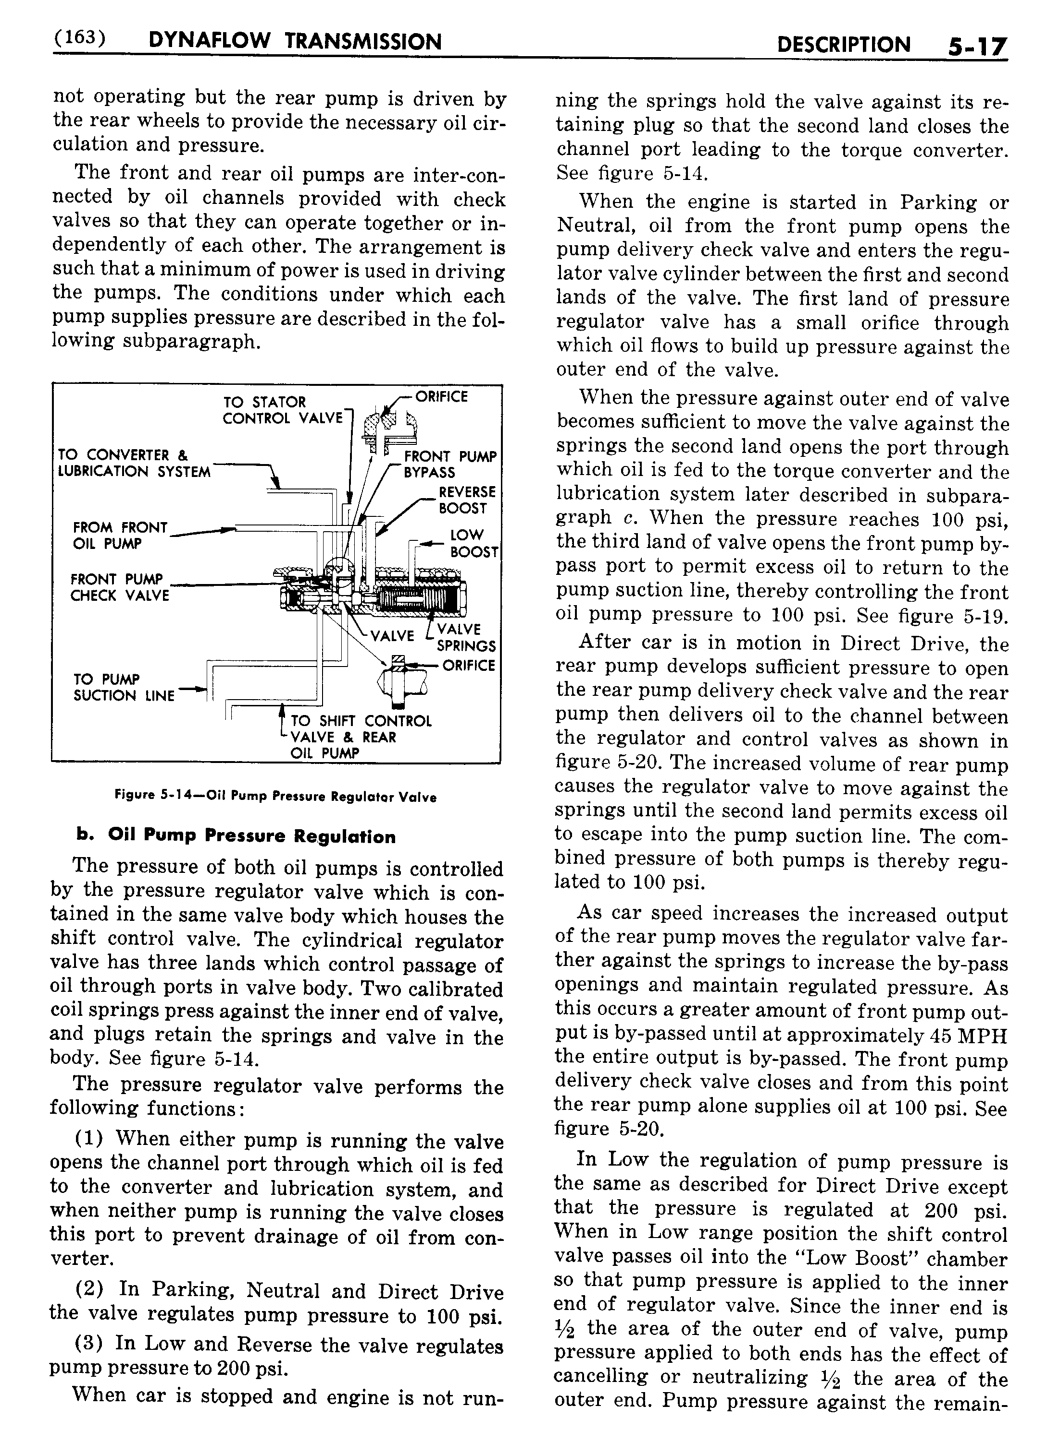 n_06 1956 Buick Shop Manual - Dynaflow-017-017.jpg